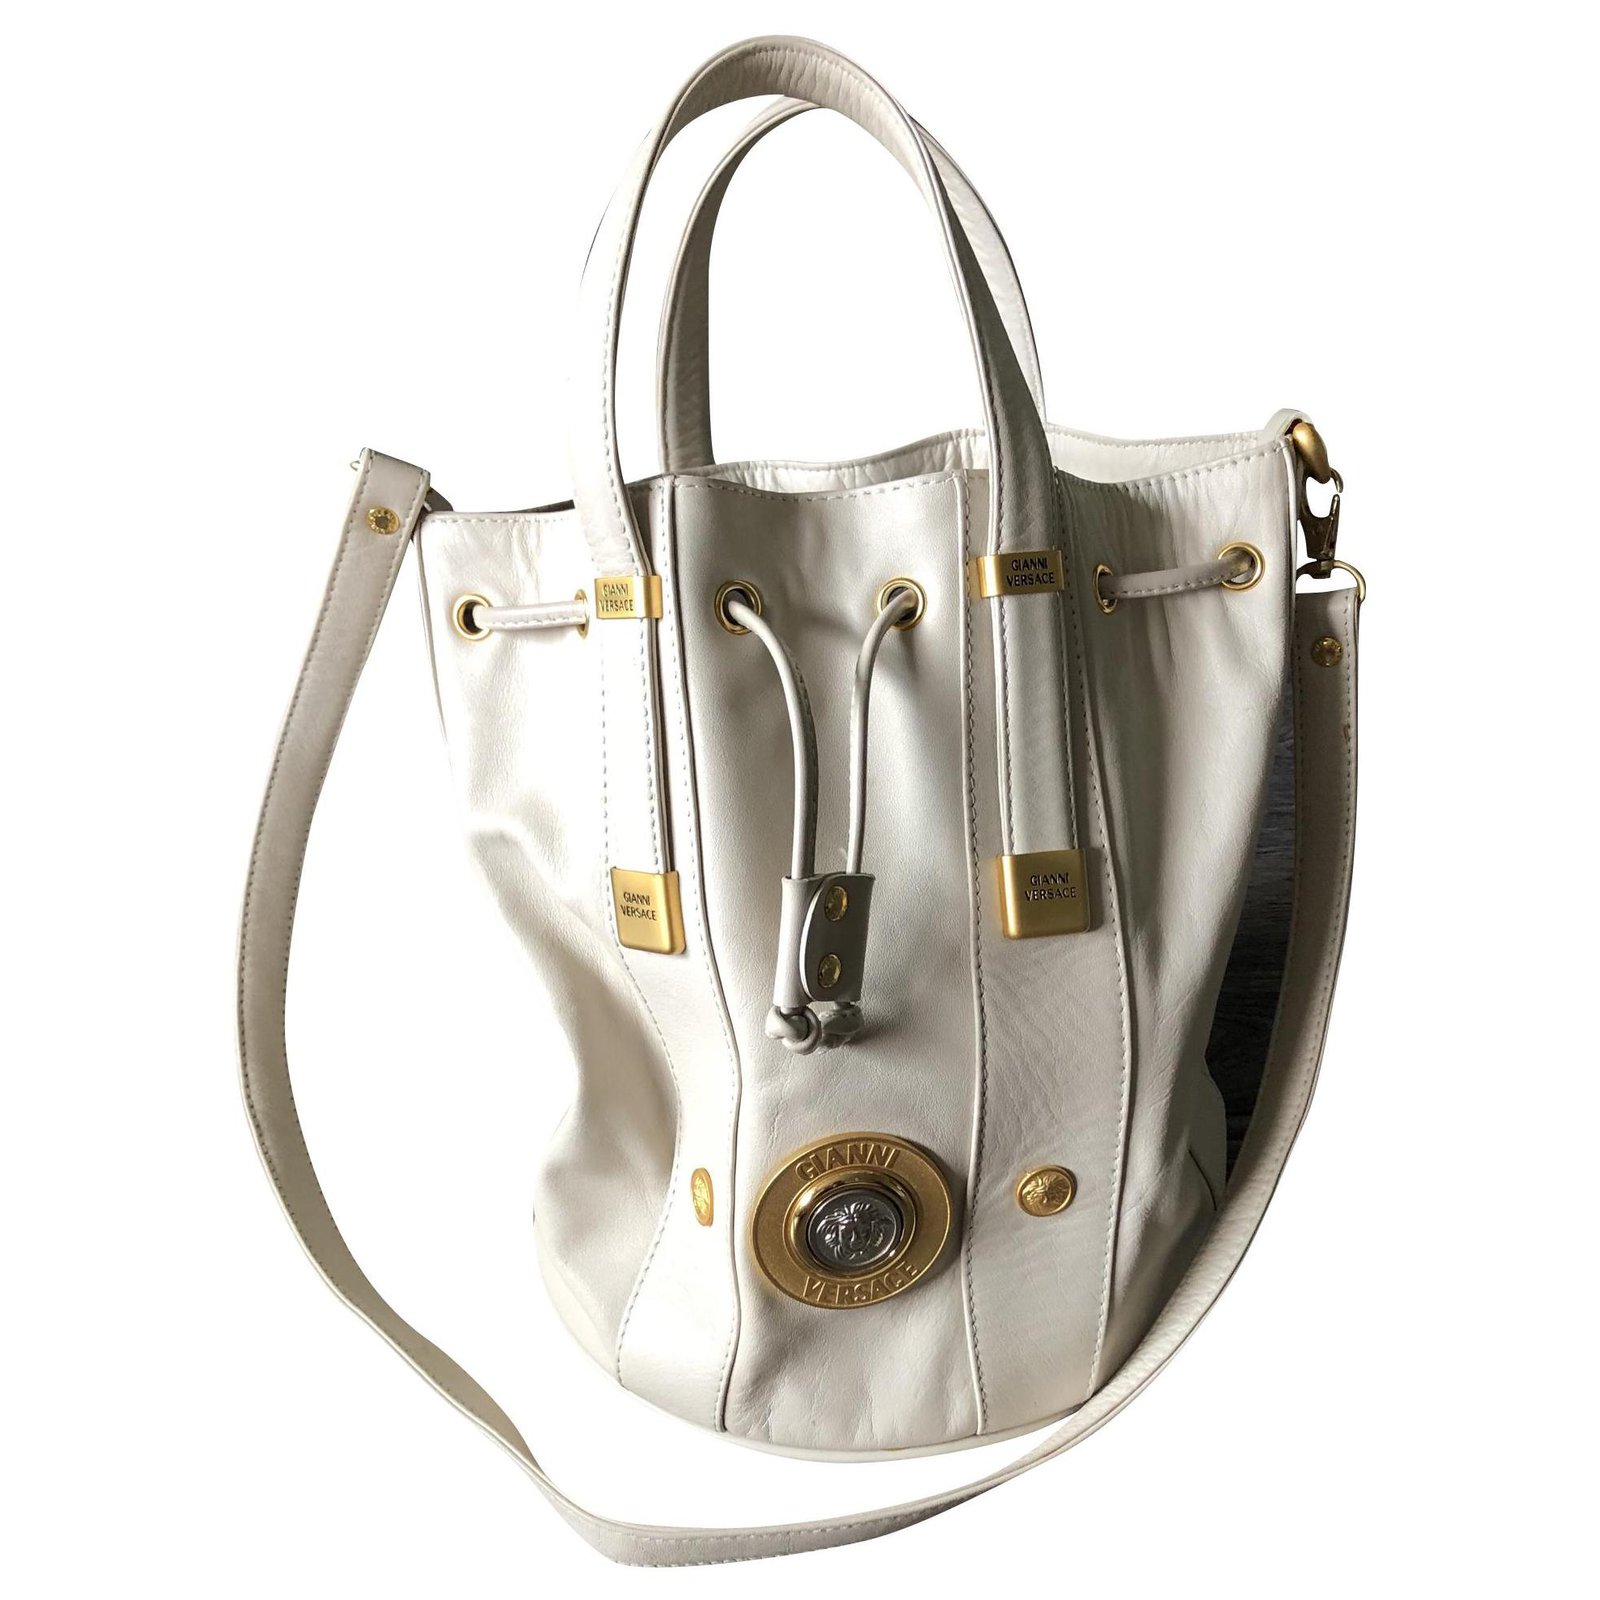 Gianni Versace, white leather bag. - Bukowskis